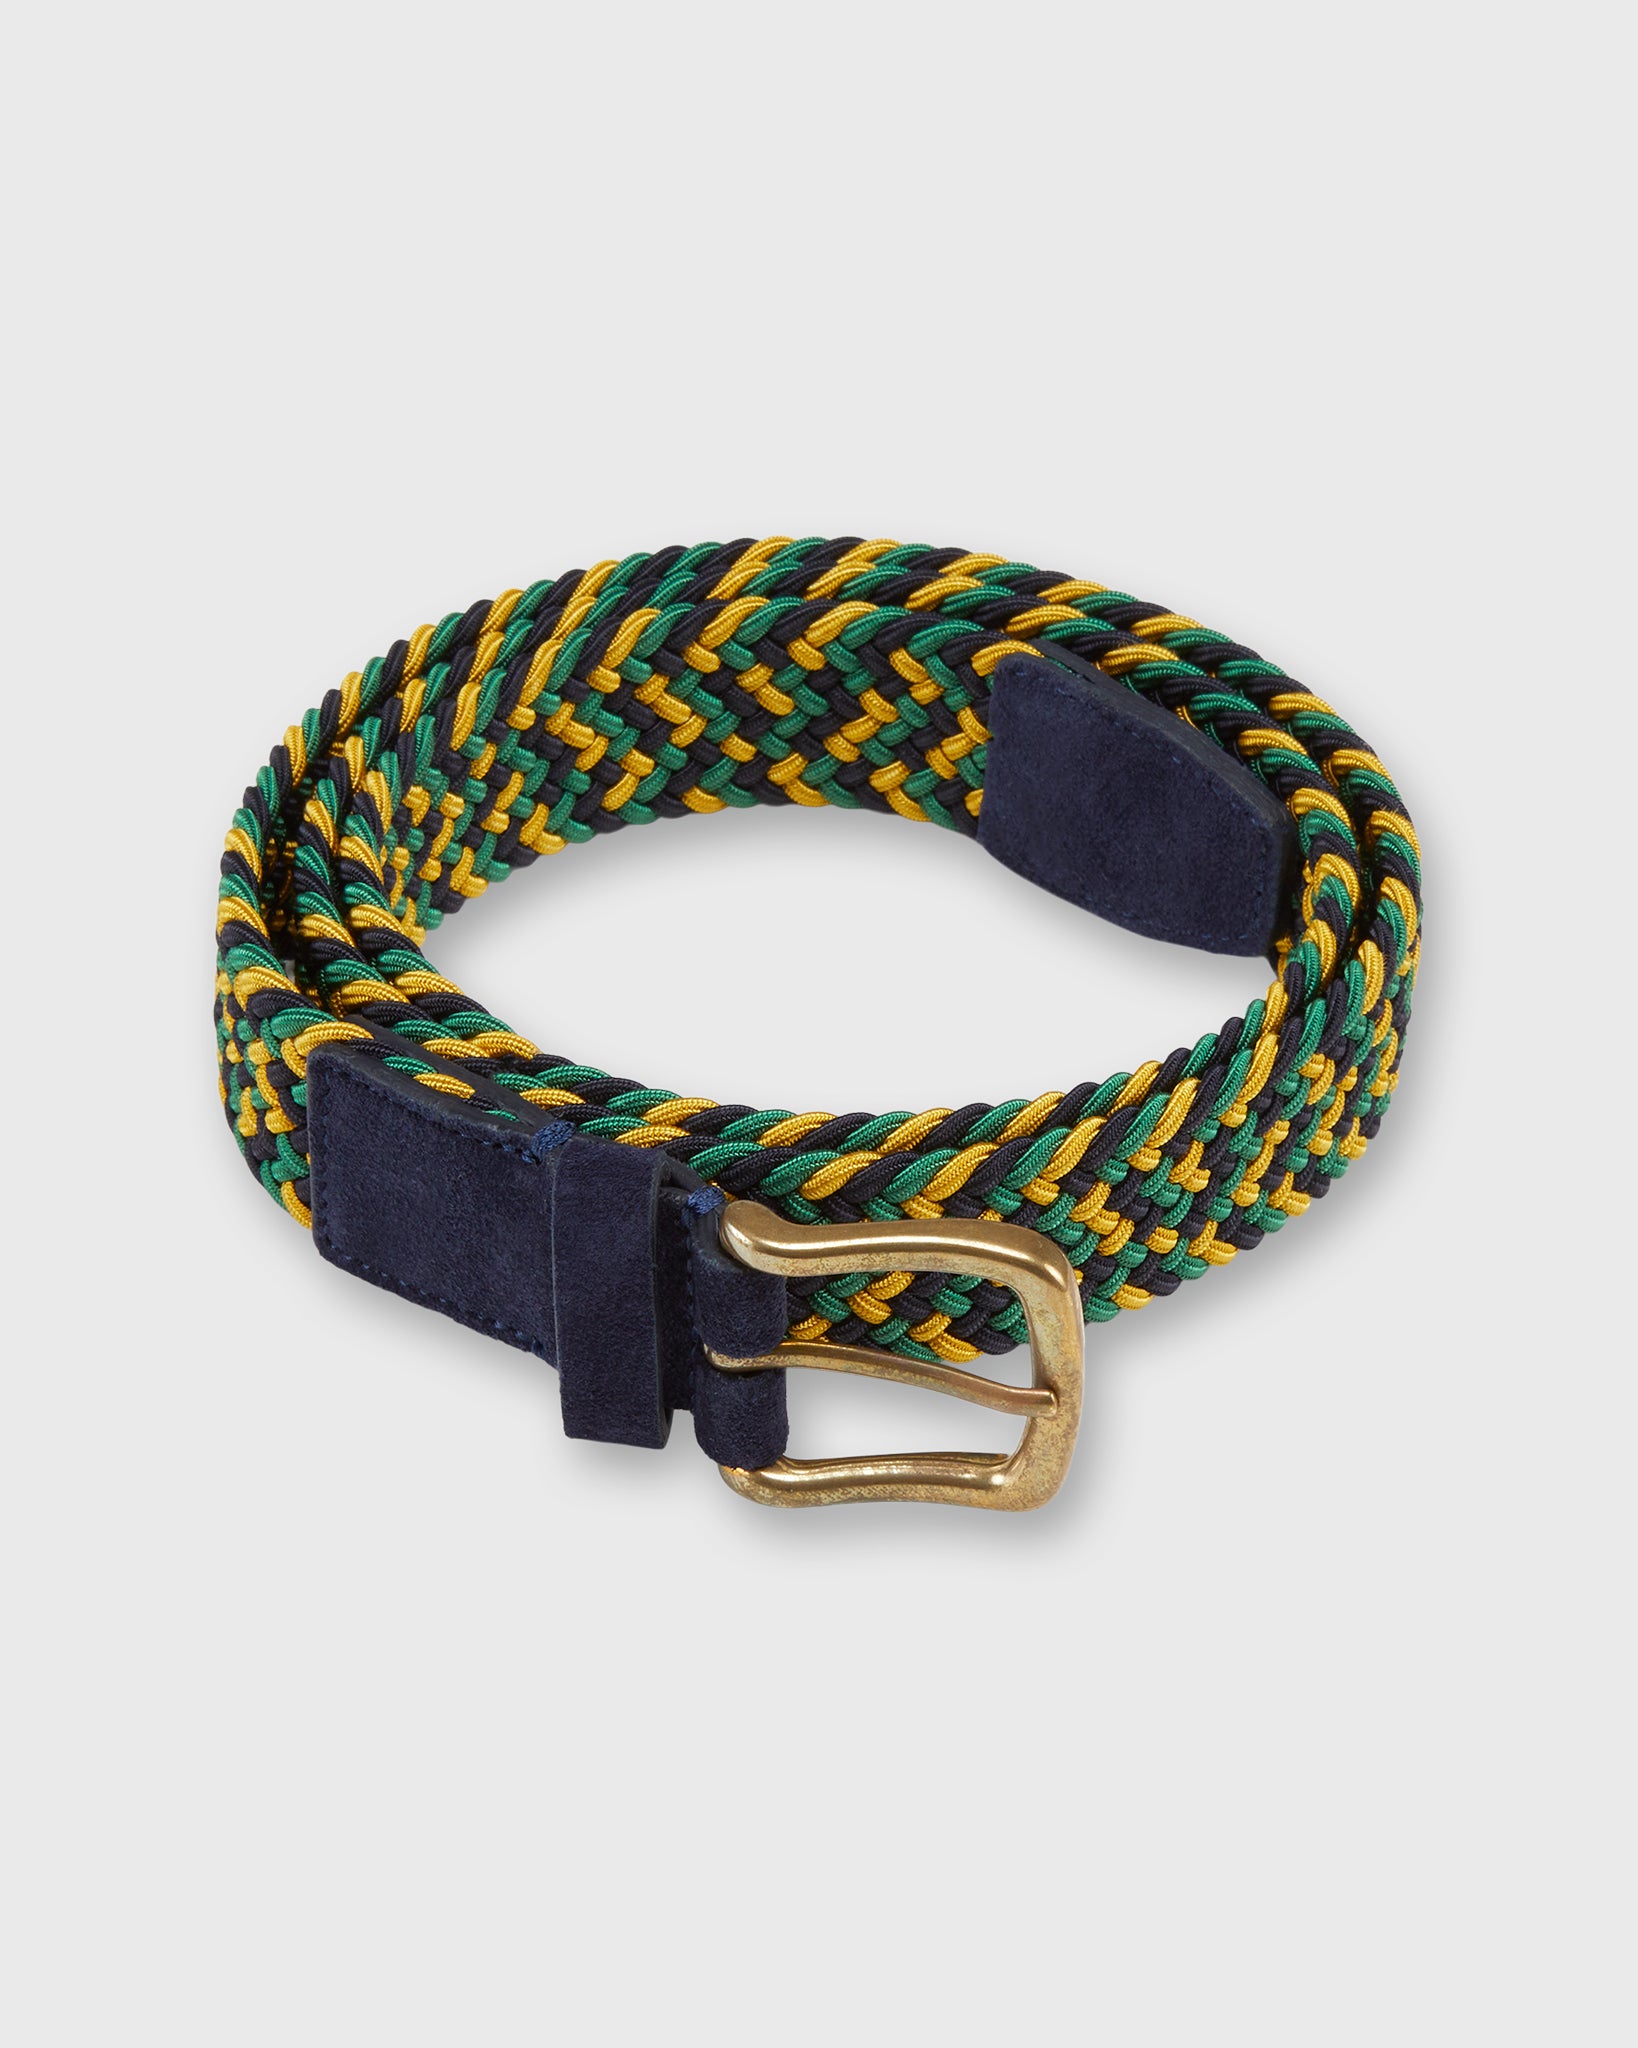 1.25" Woven Elastic Belt in Gold/Green/Navy